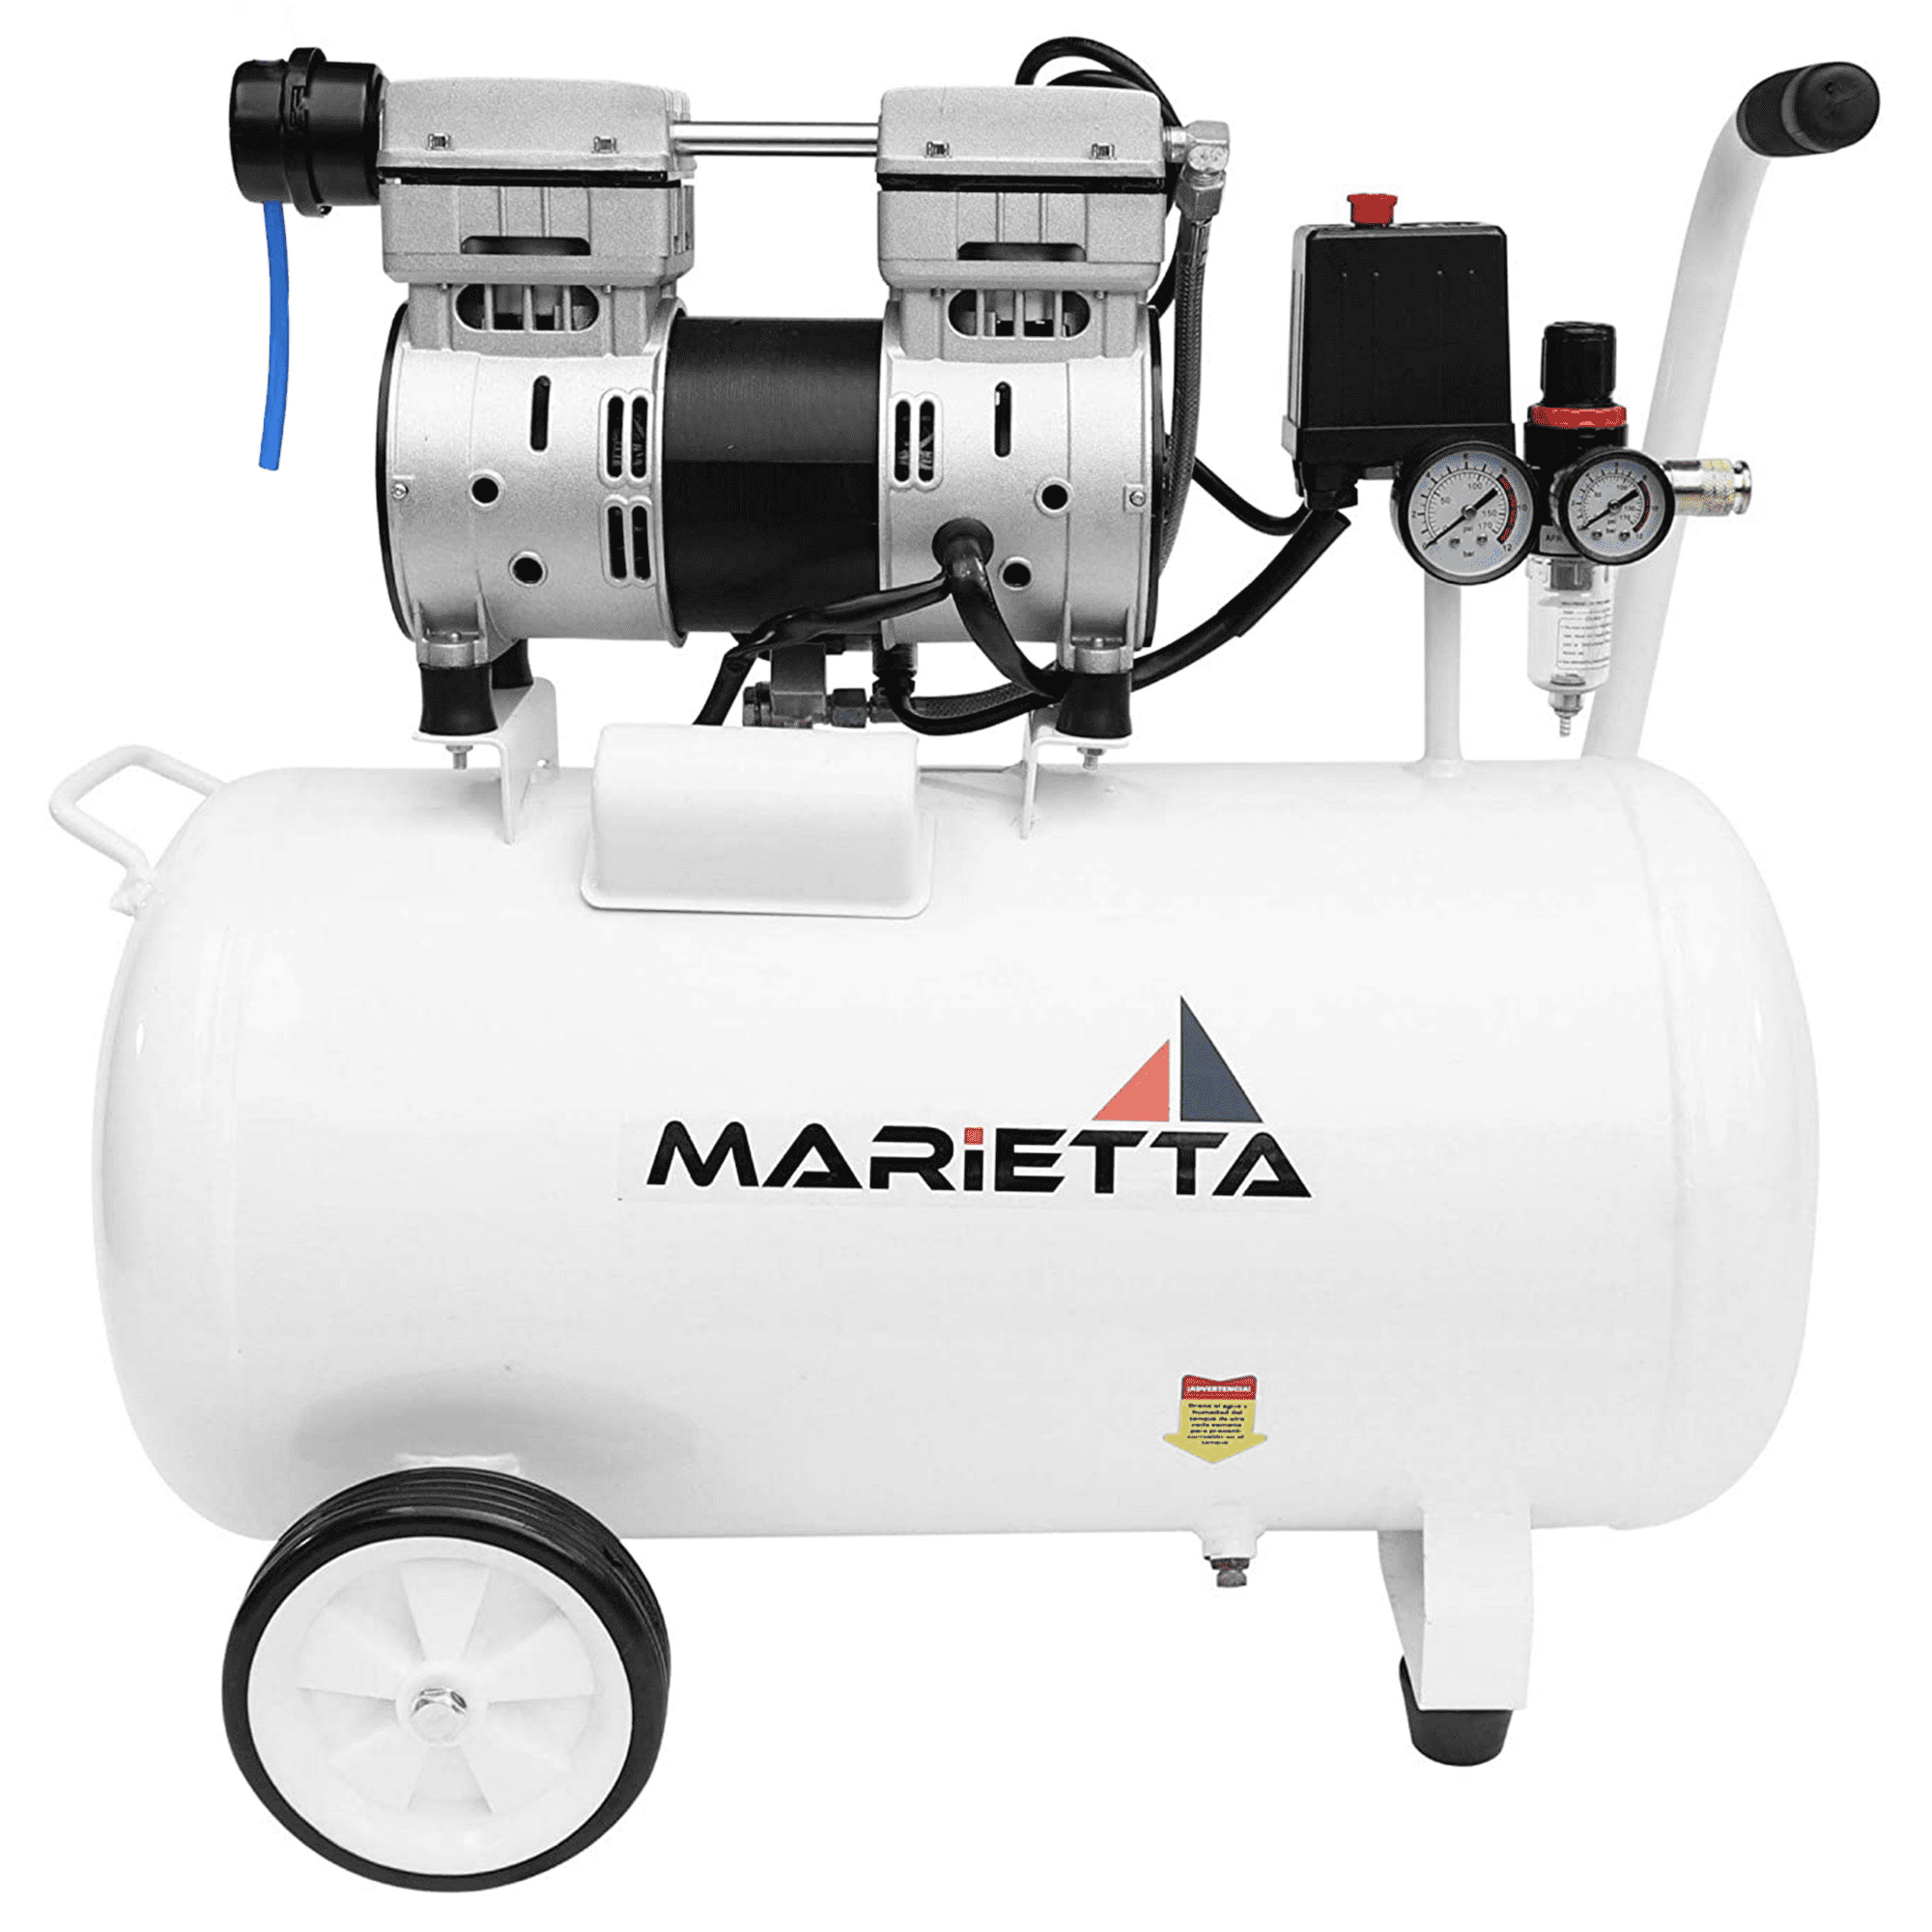 Marietta 1hp 50l: compresor libre de aceite 50l 1hp 13 gal. compresor para dental. compresor de aire para pintar.